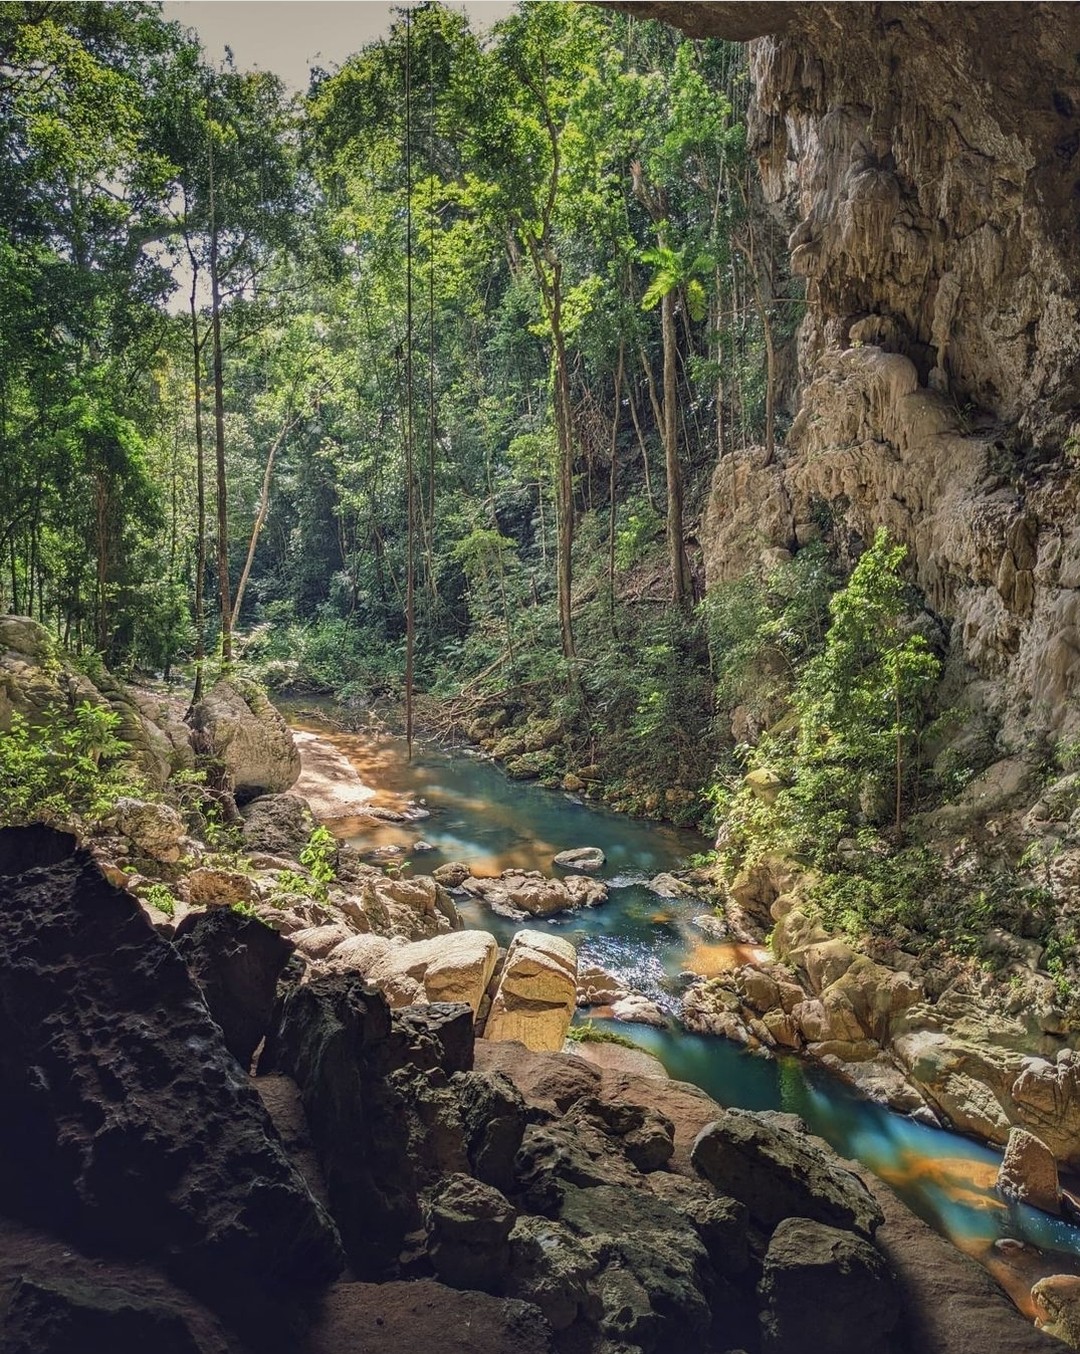 Der Westen von Belize beherbergt ein ausgedehntes Höhlennetz, das einst von den alten Maya als Ort für Gottesdienste, Rituale und Bestattungen genutzt wurde. Nehmen Sie auf jeden Fall eine der vielen Höhlen in Ihre Reiseroute ins Landesinnere auf. #travelbelize????: @wanderesswithastory